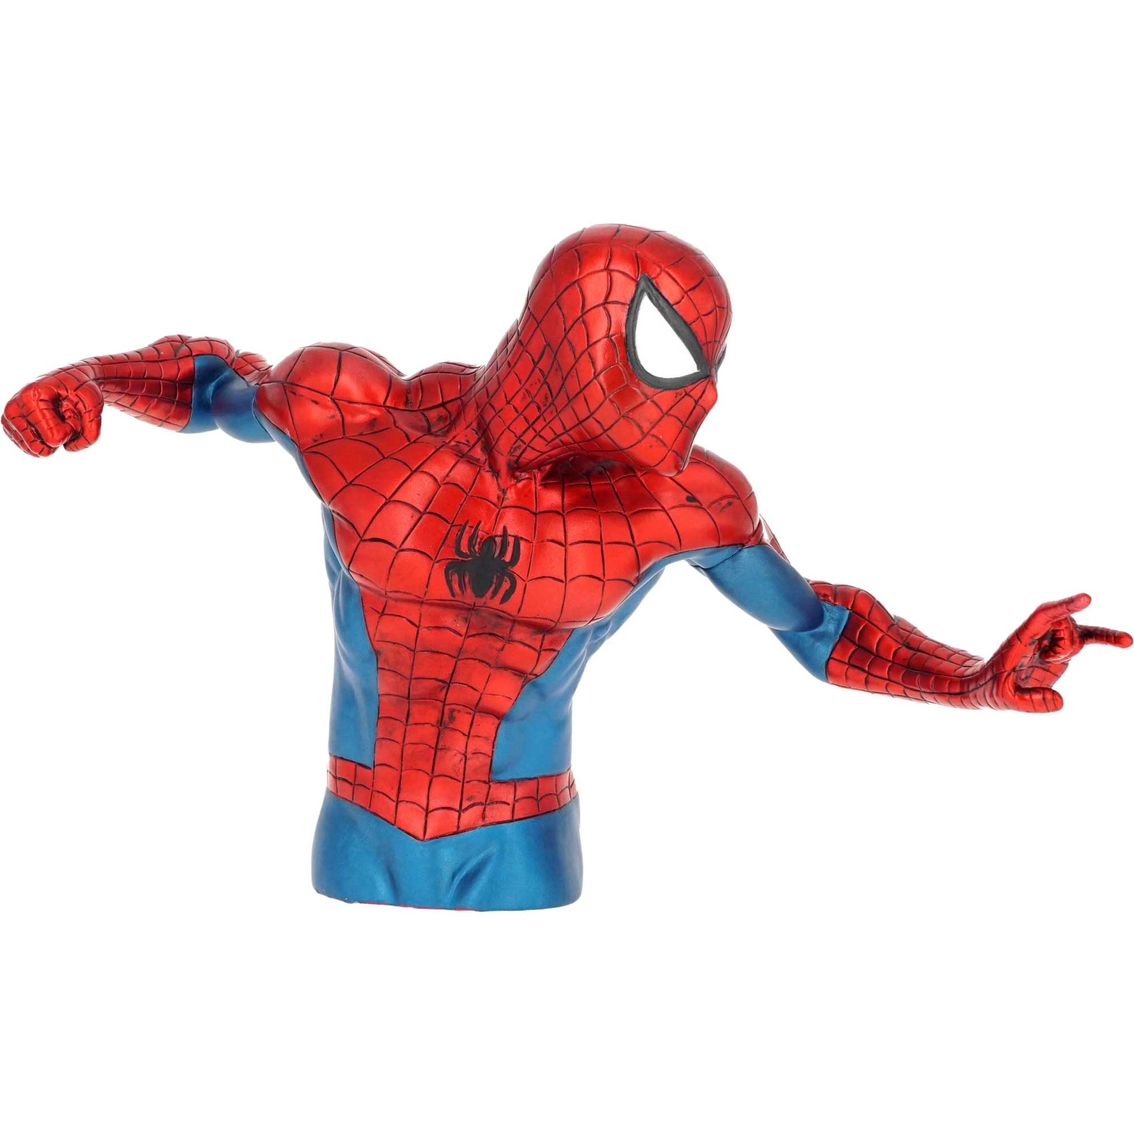 Marvel Spider-Man Bank - Image 2 of 2